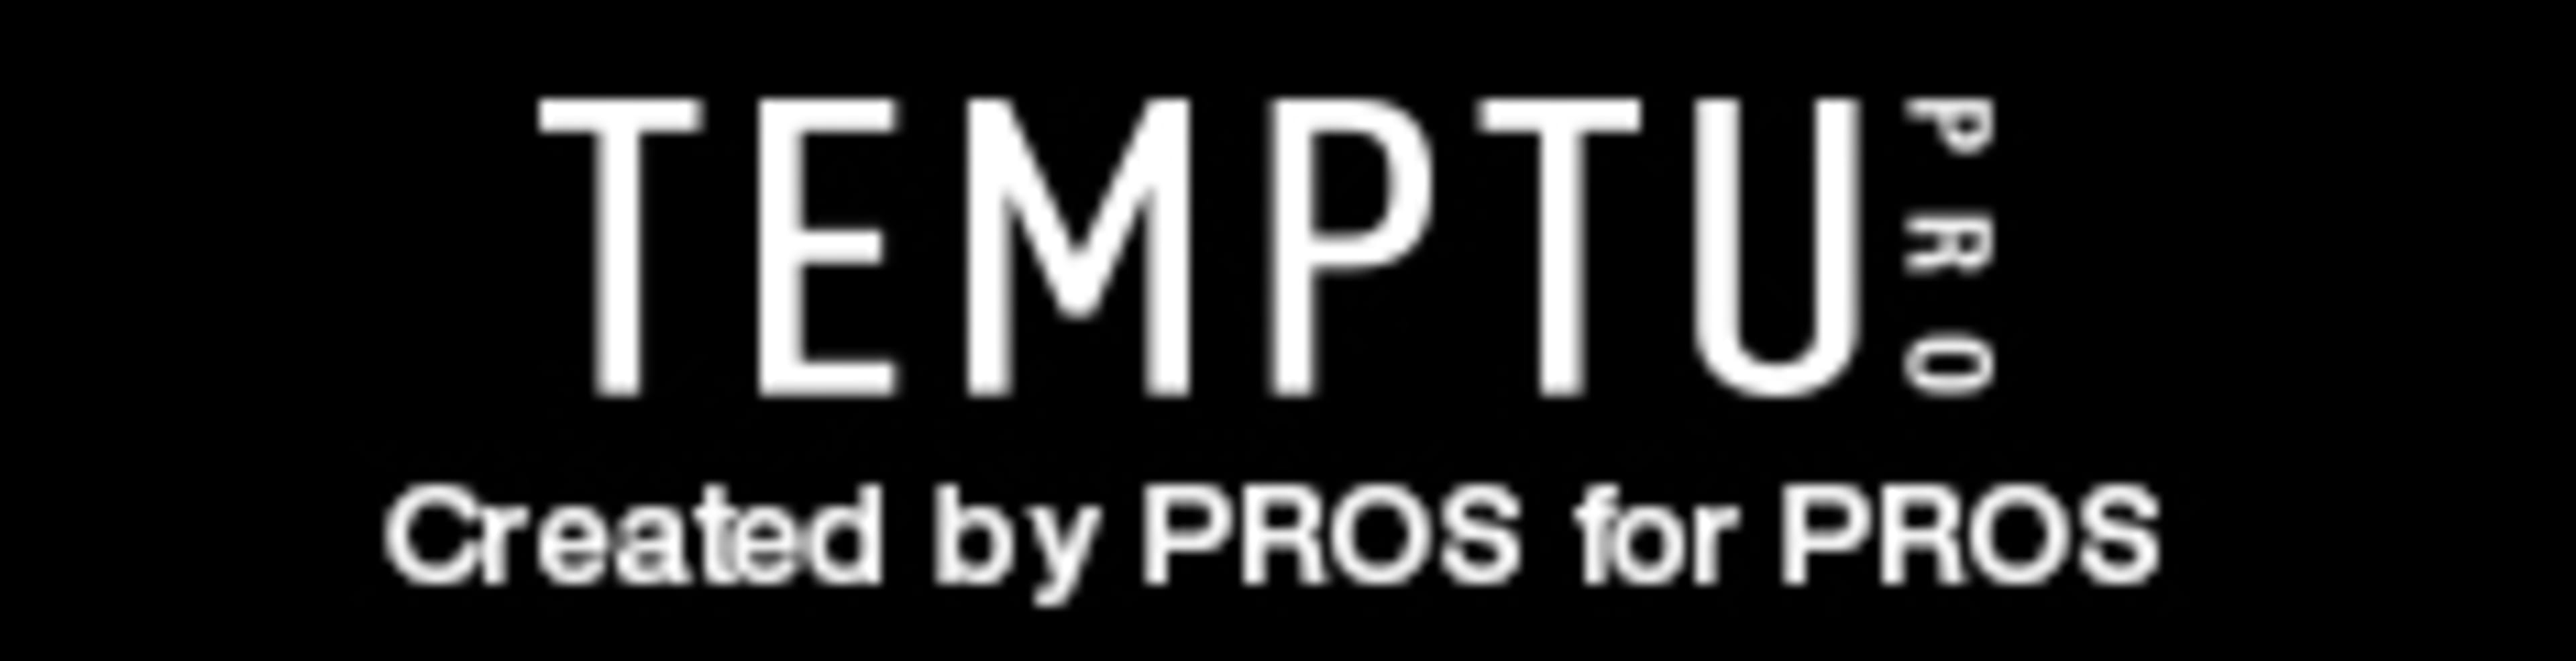 TEMPTU Pro Code